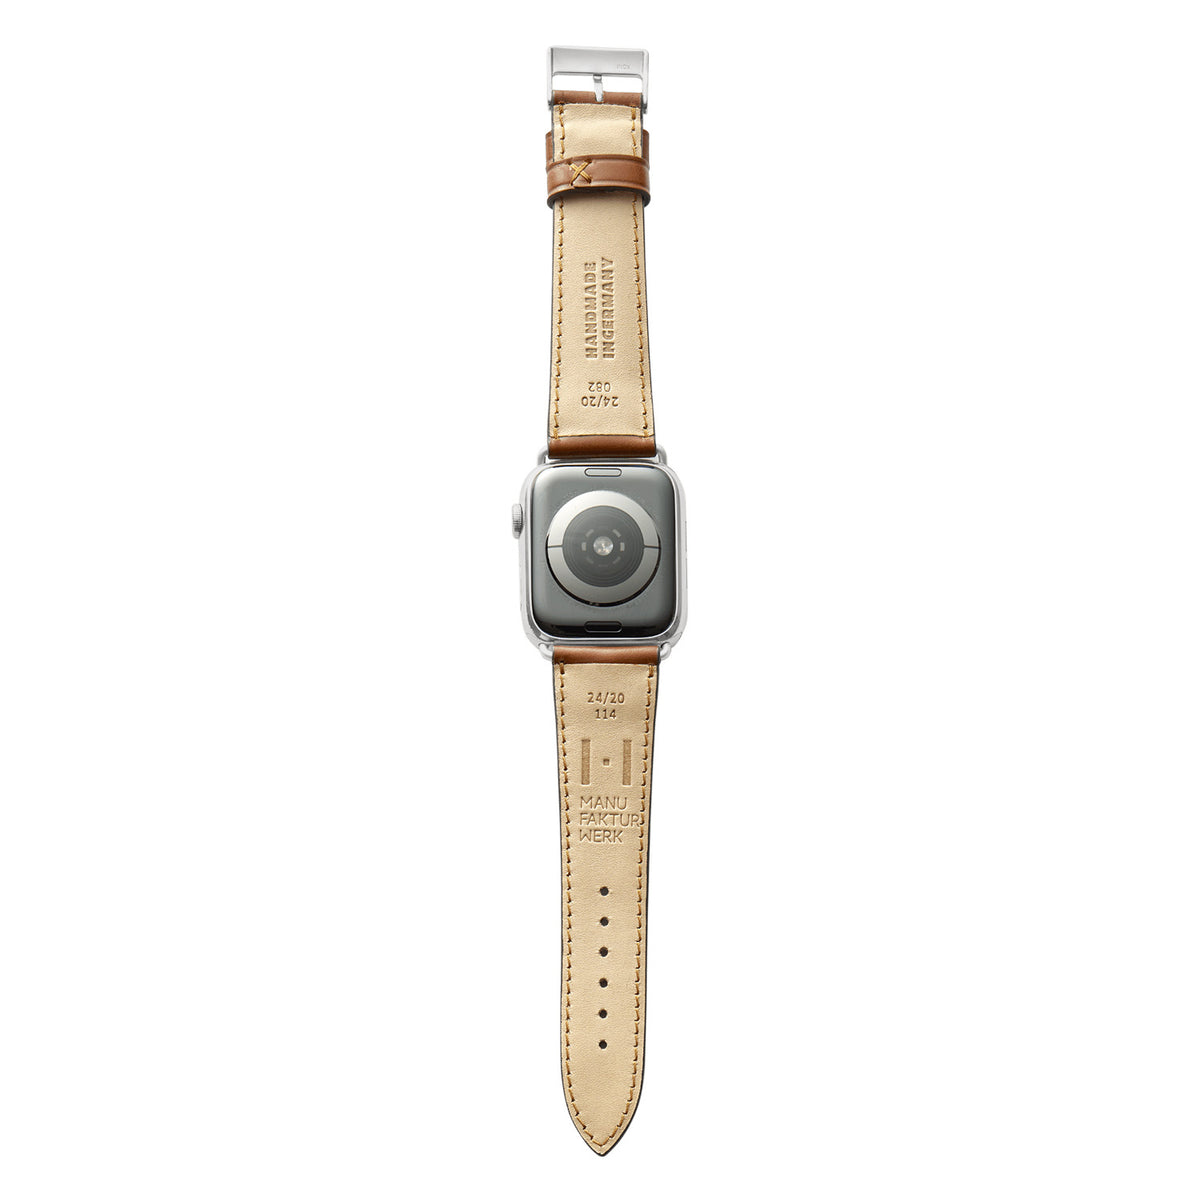 Correa de cuero Apple Watch hecha de Shell Cordovan &quot;WINTERHUDE&quot; - Coñac